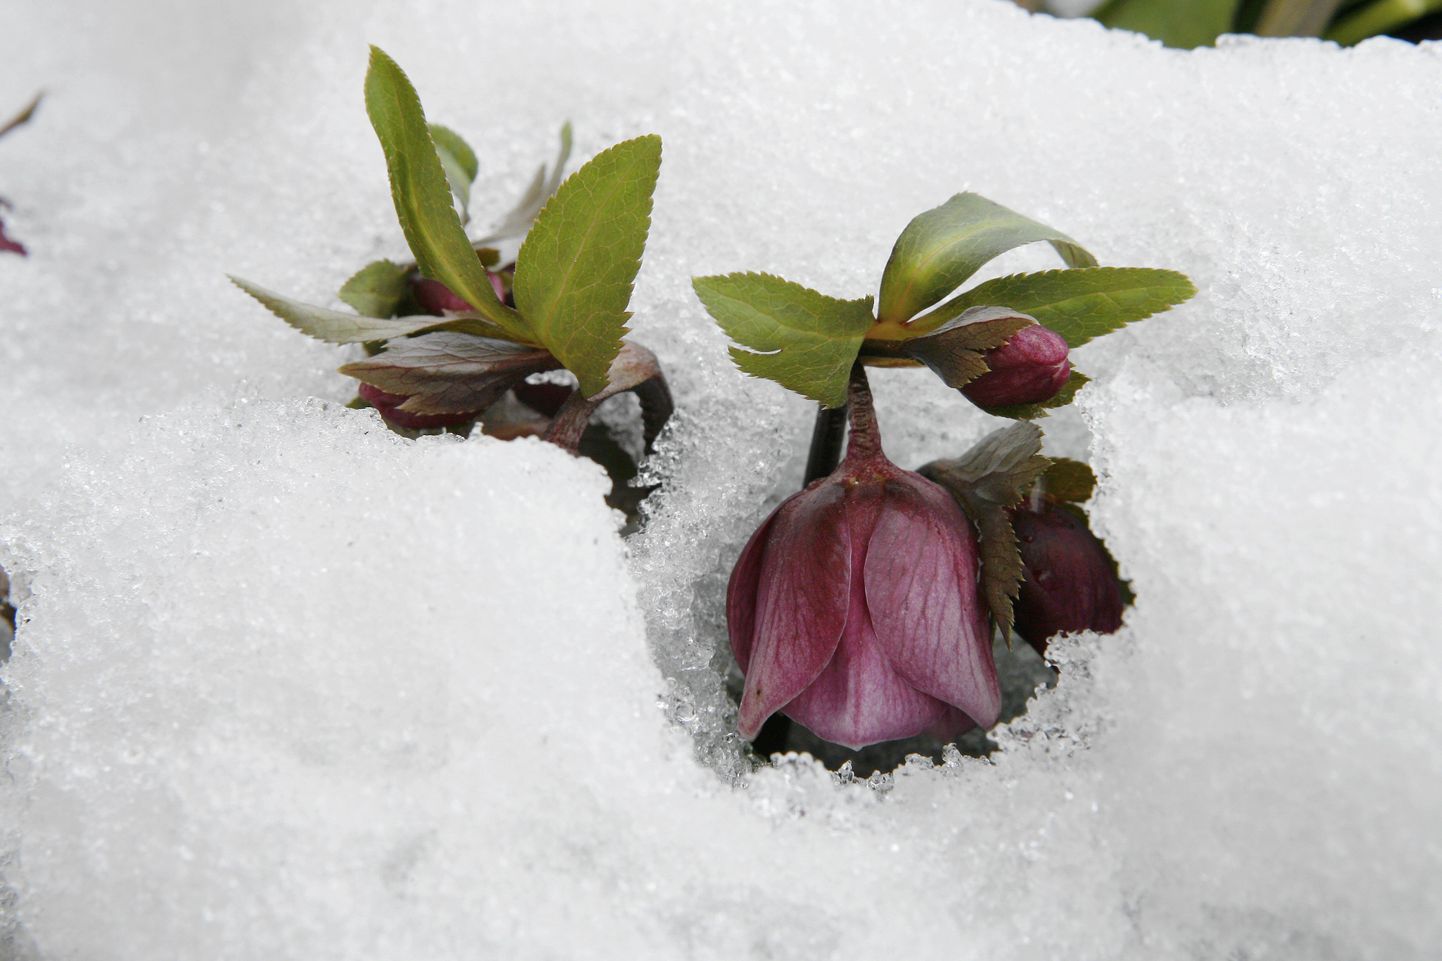 Selline see Eesti kevad on: lilled lume süles.